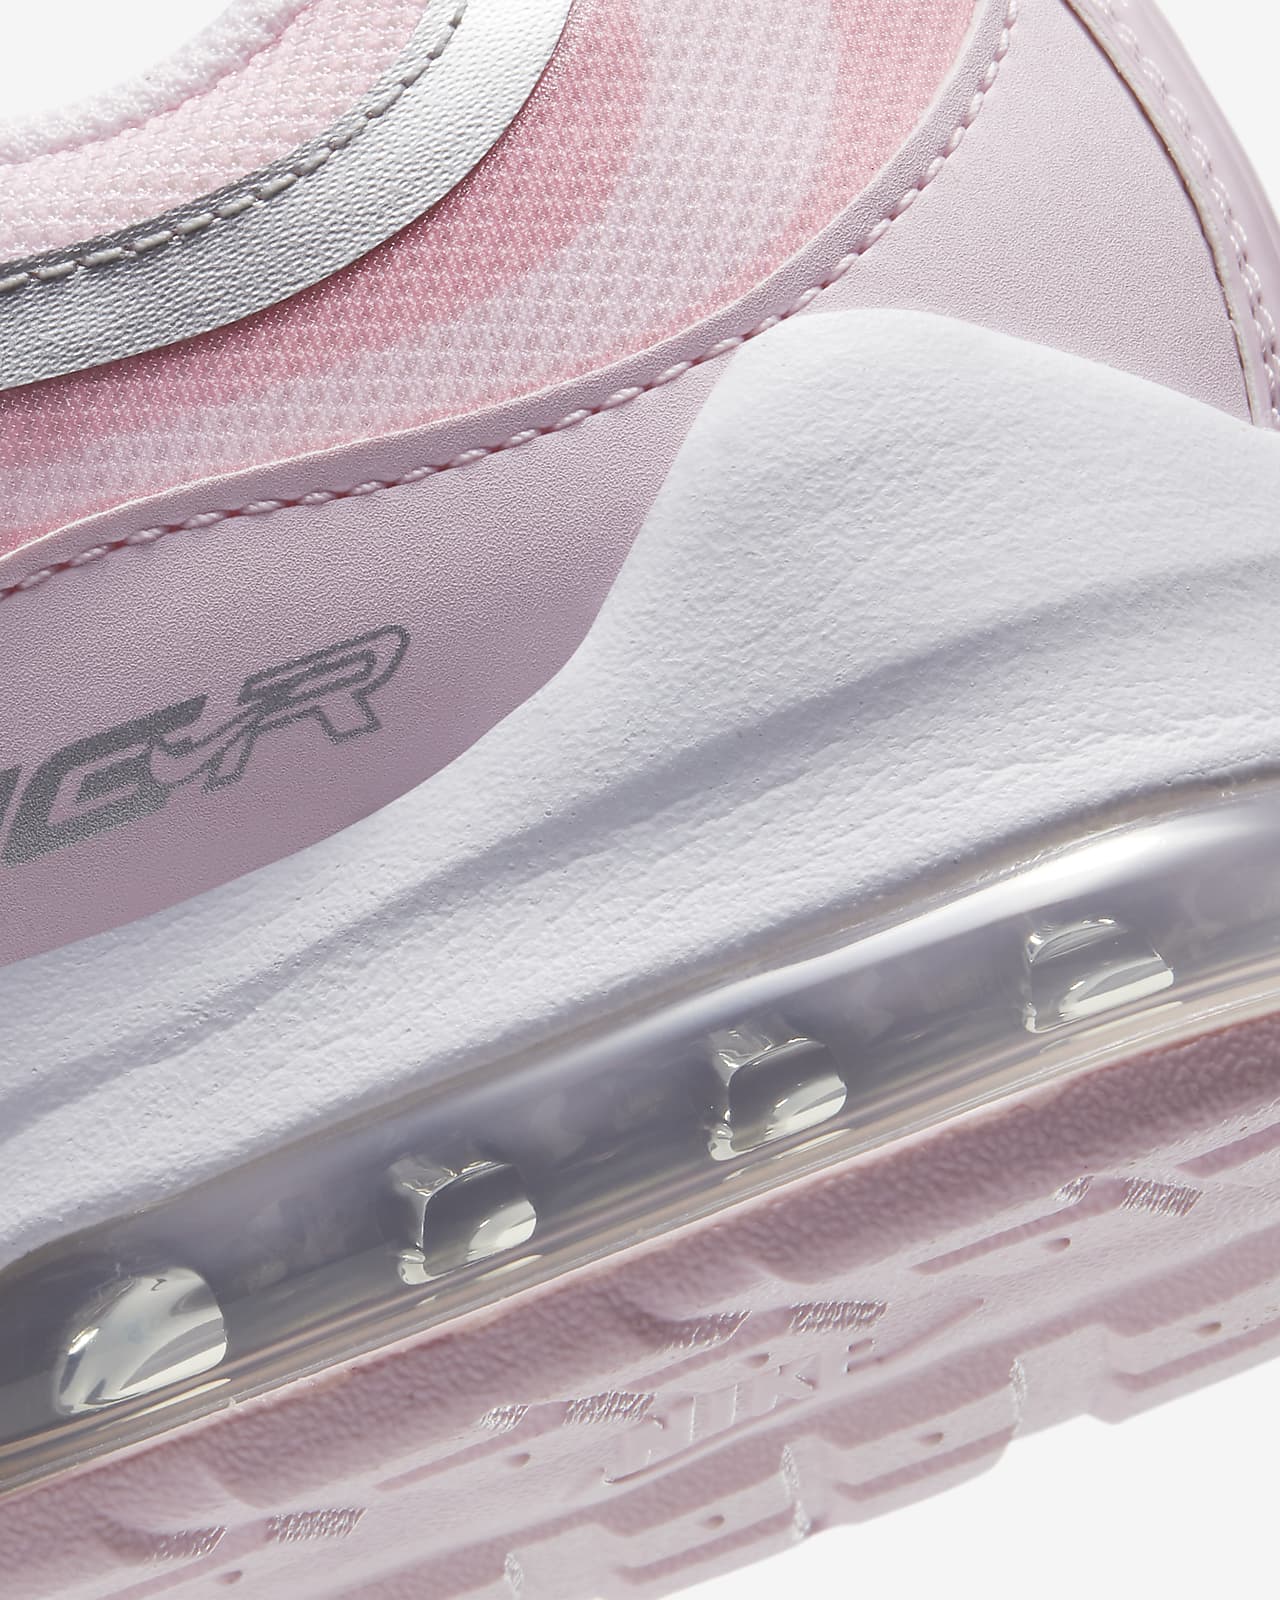 Nike Air Max VG-R Women's Shoes